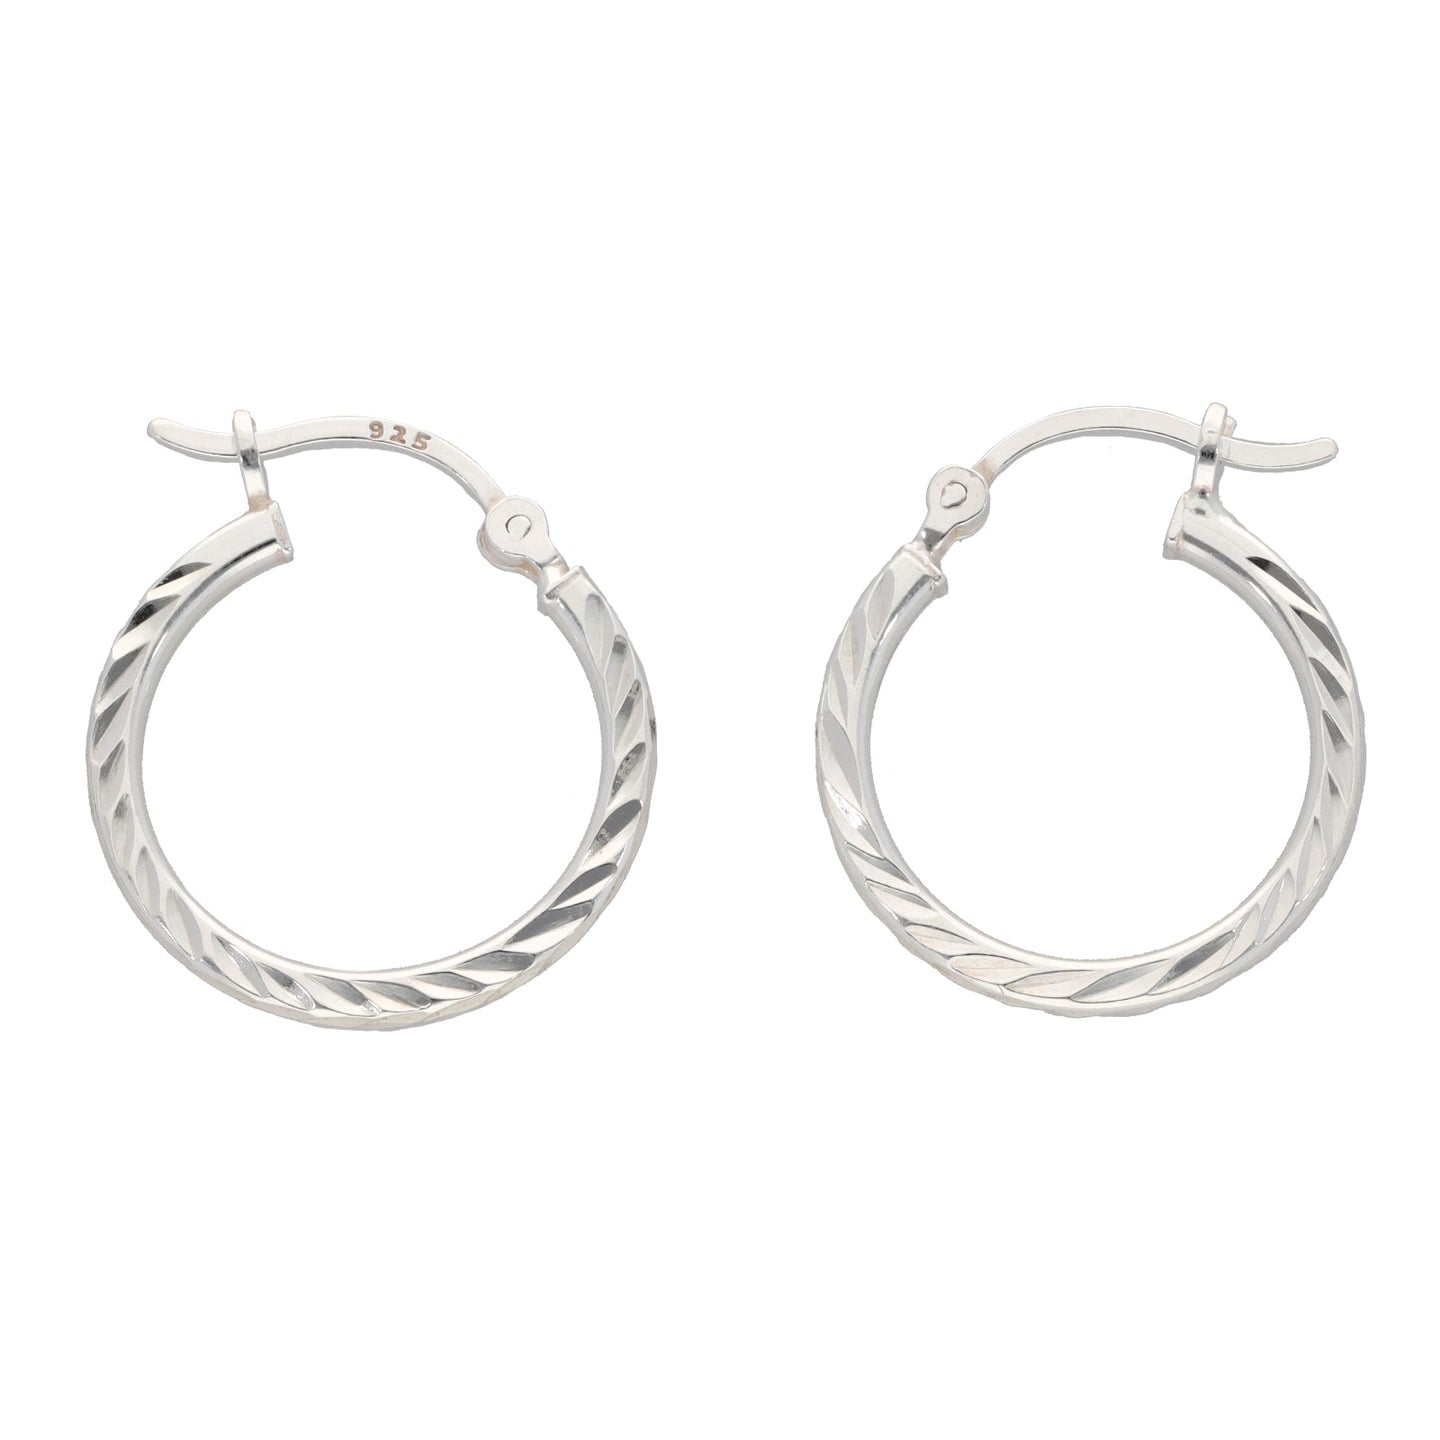 Silver Sterling Patterned Hoop Earrings